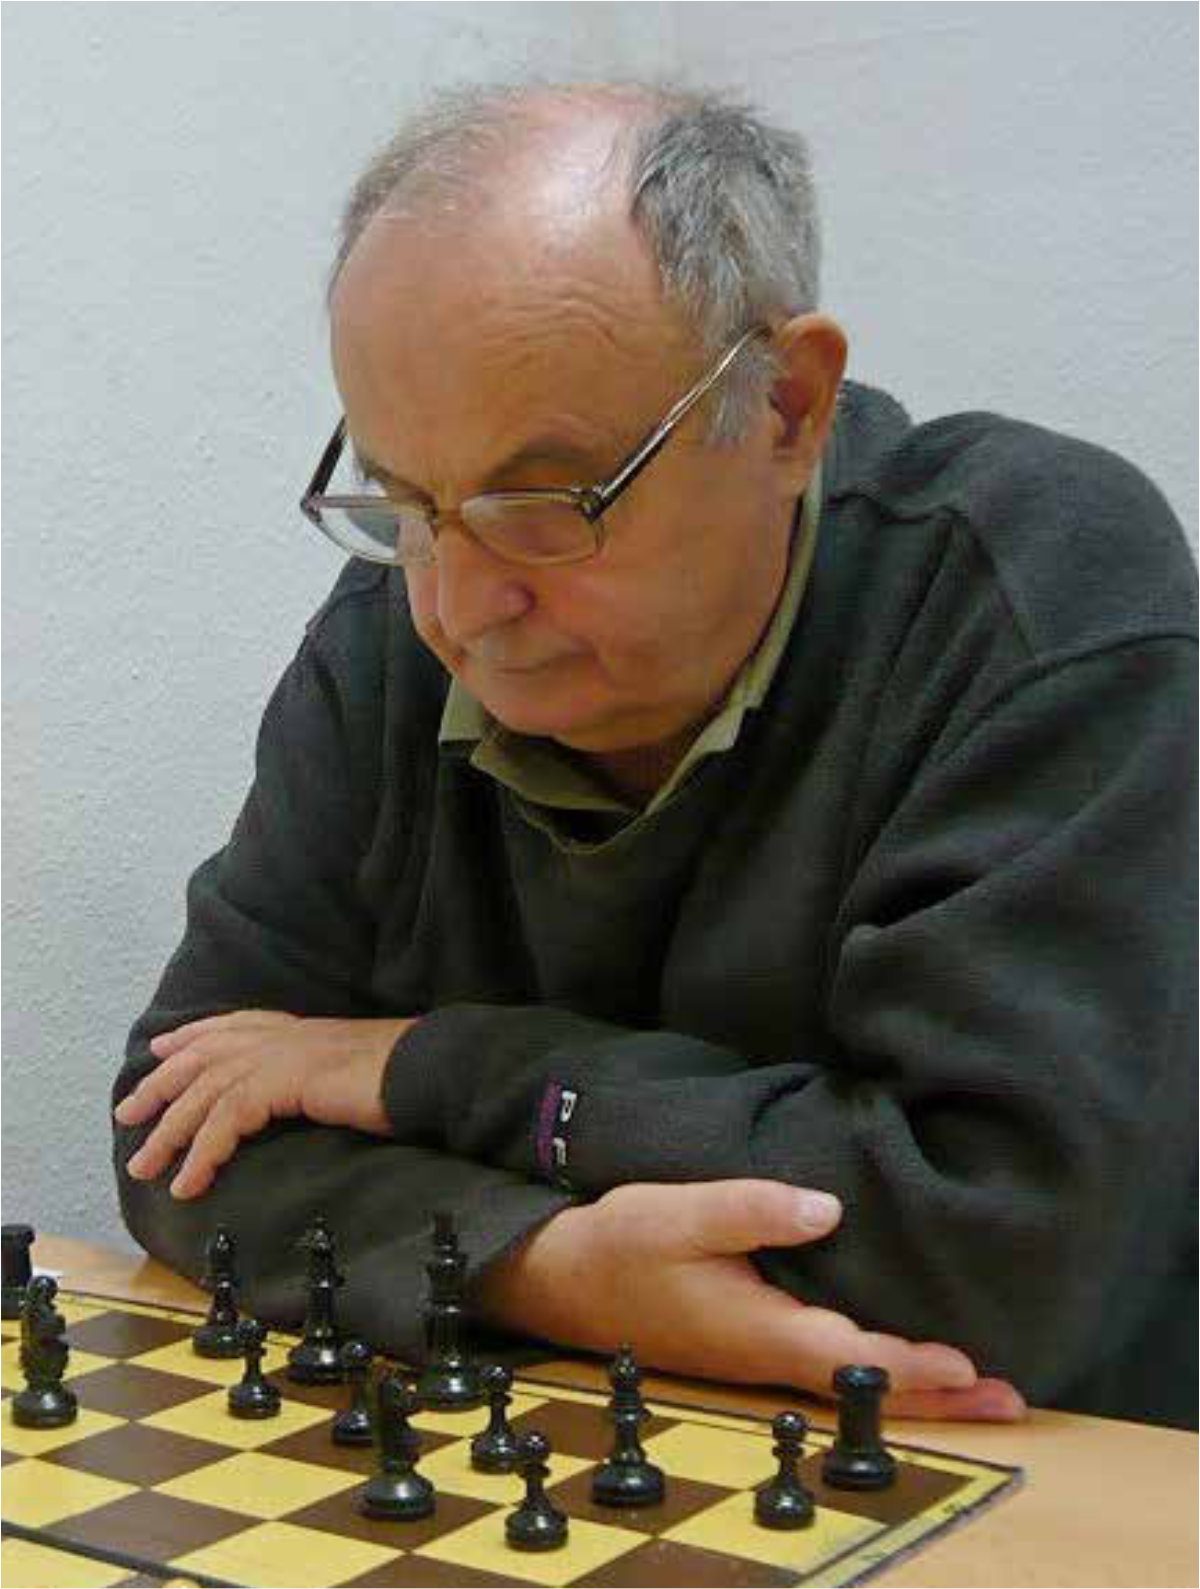 Męzczyzna przygląda się sytuacji na szachownicy przed sobą